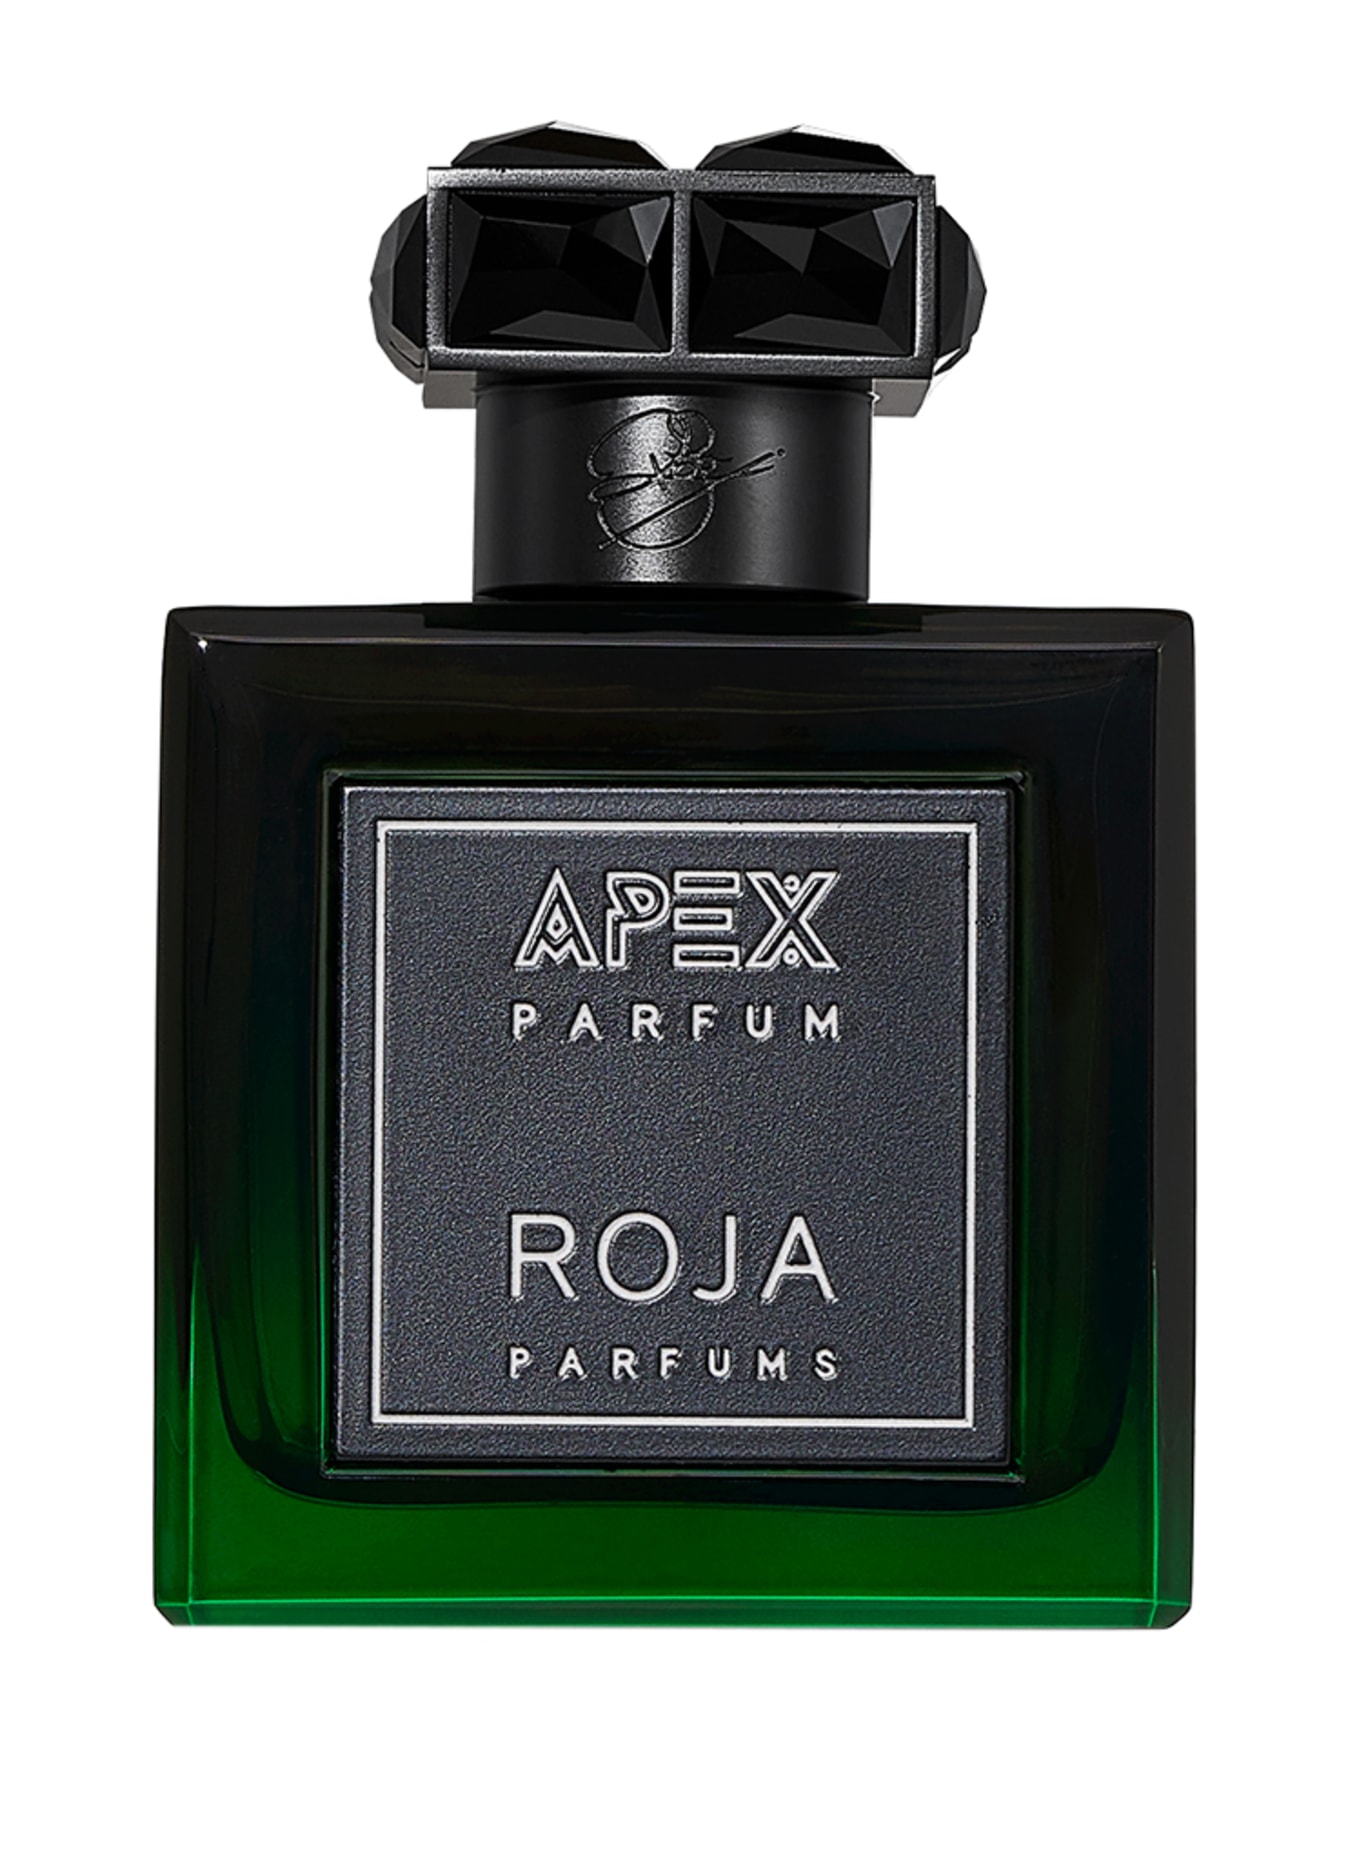 ROJA PARFUMS APEX (Obrazek 1)